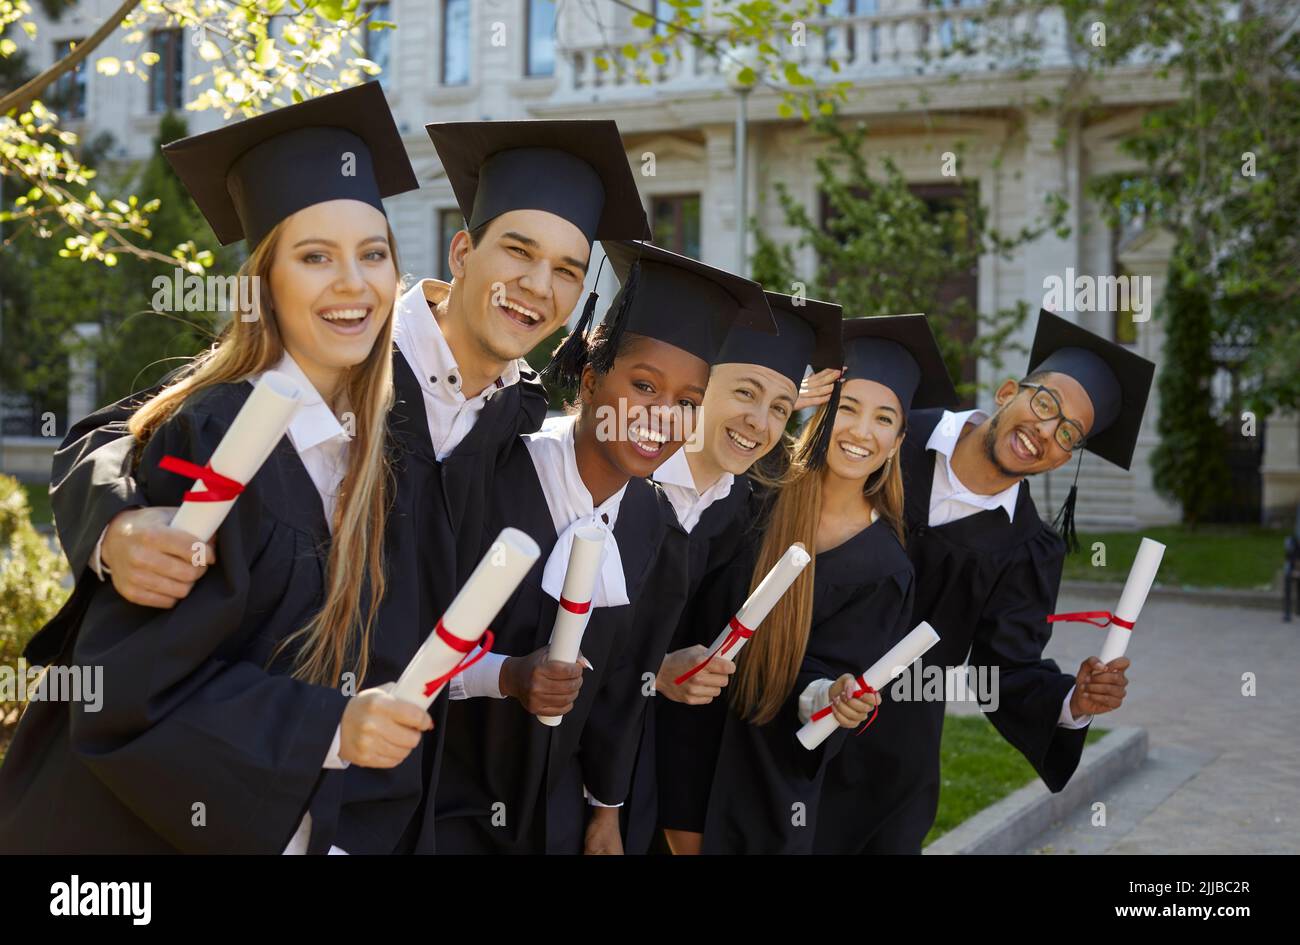 Junge, multirassische Hochschulabsolventen im akademischen Kleid posieren mit einem Lächeln nach der Abschlussfeier Stockfoto